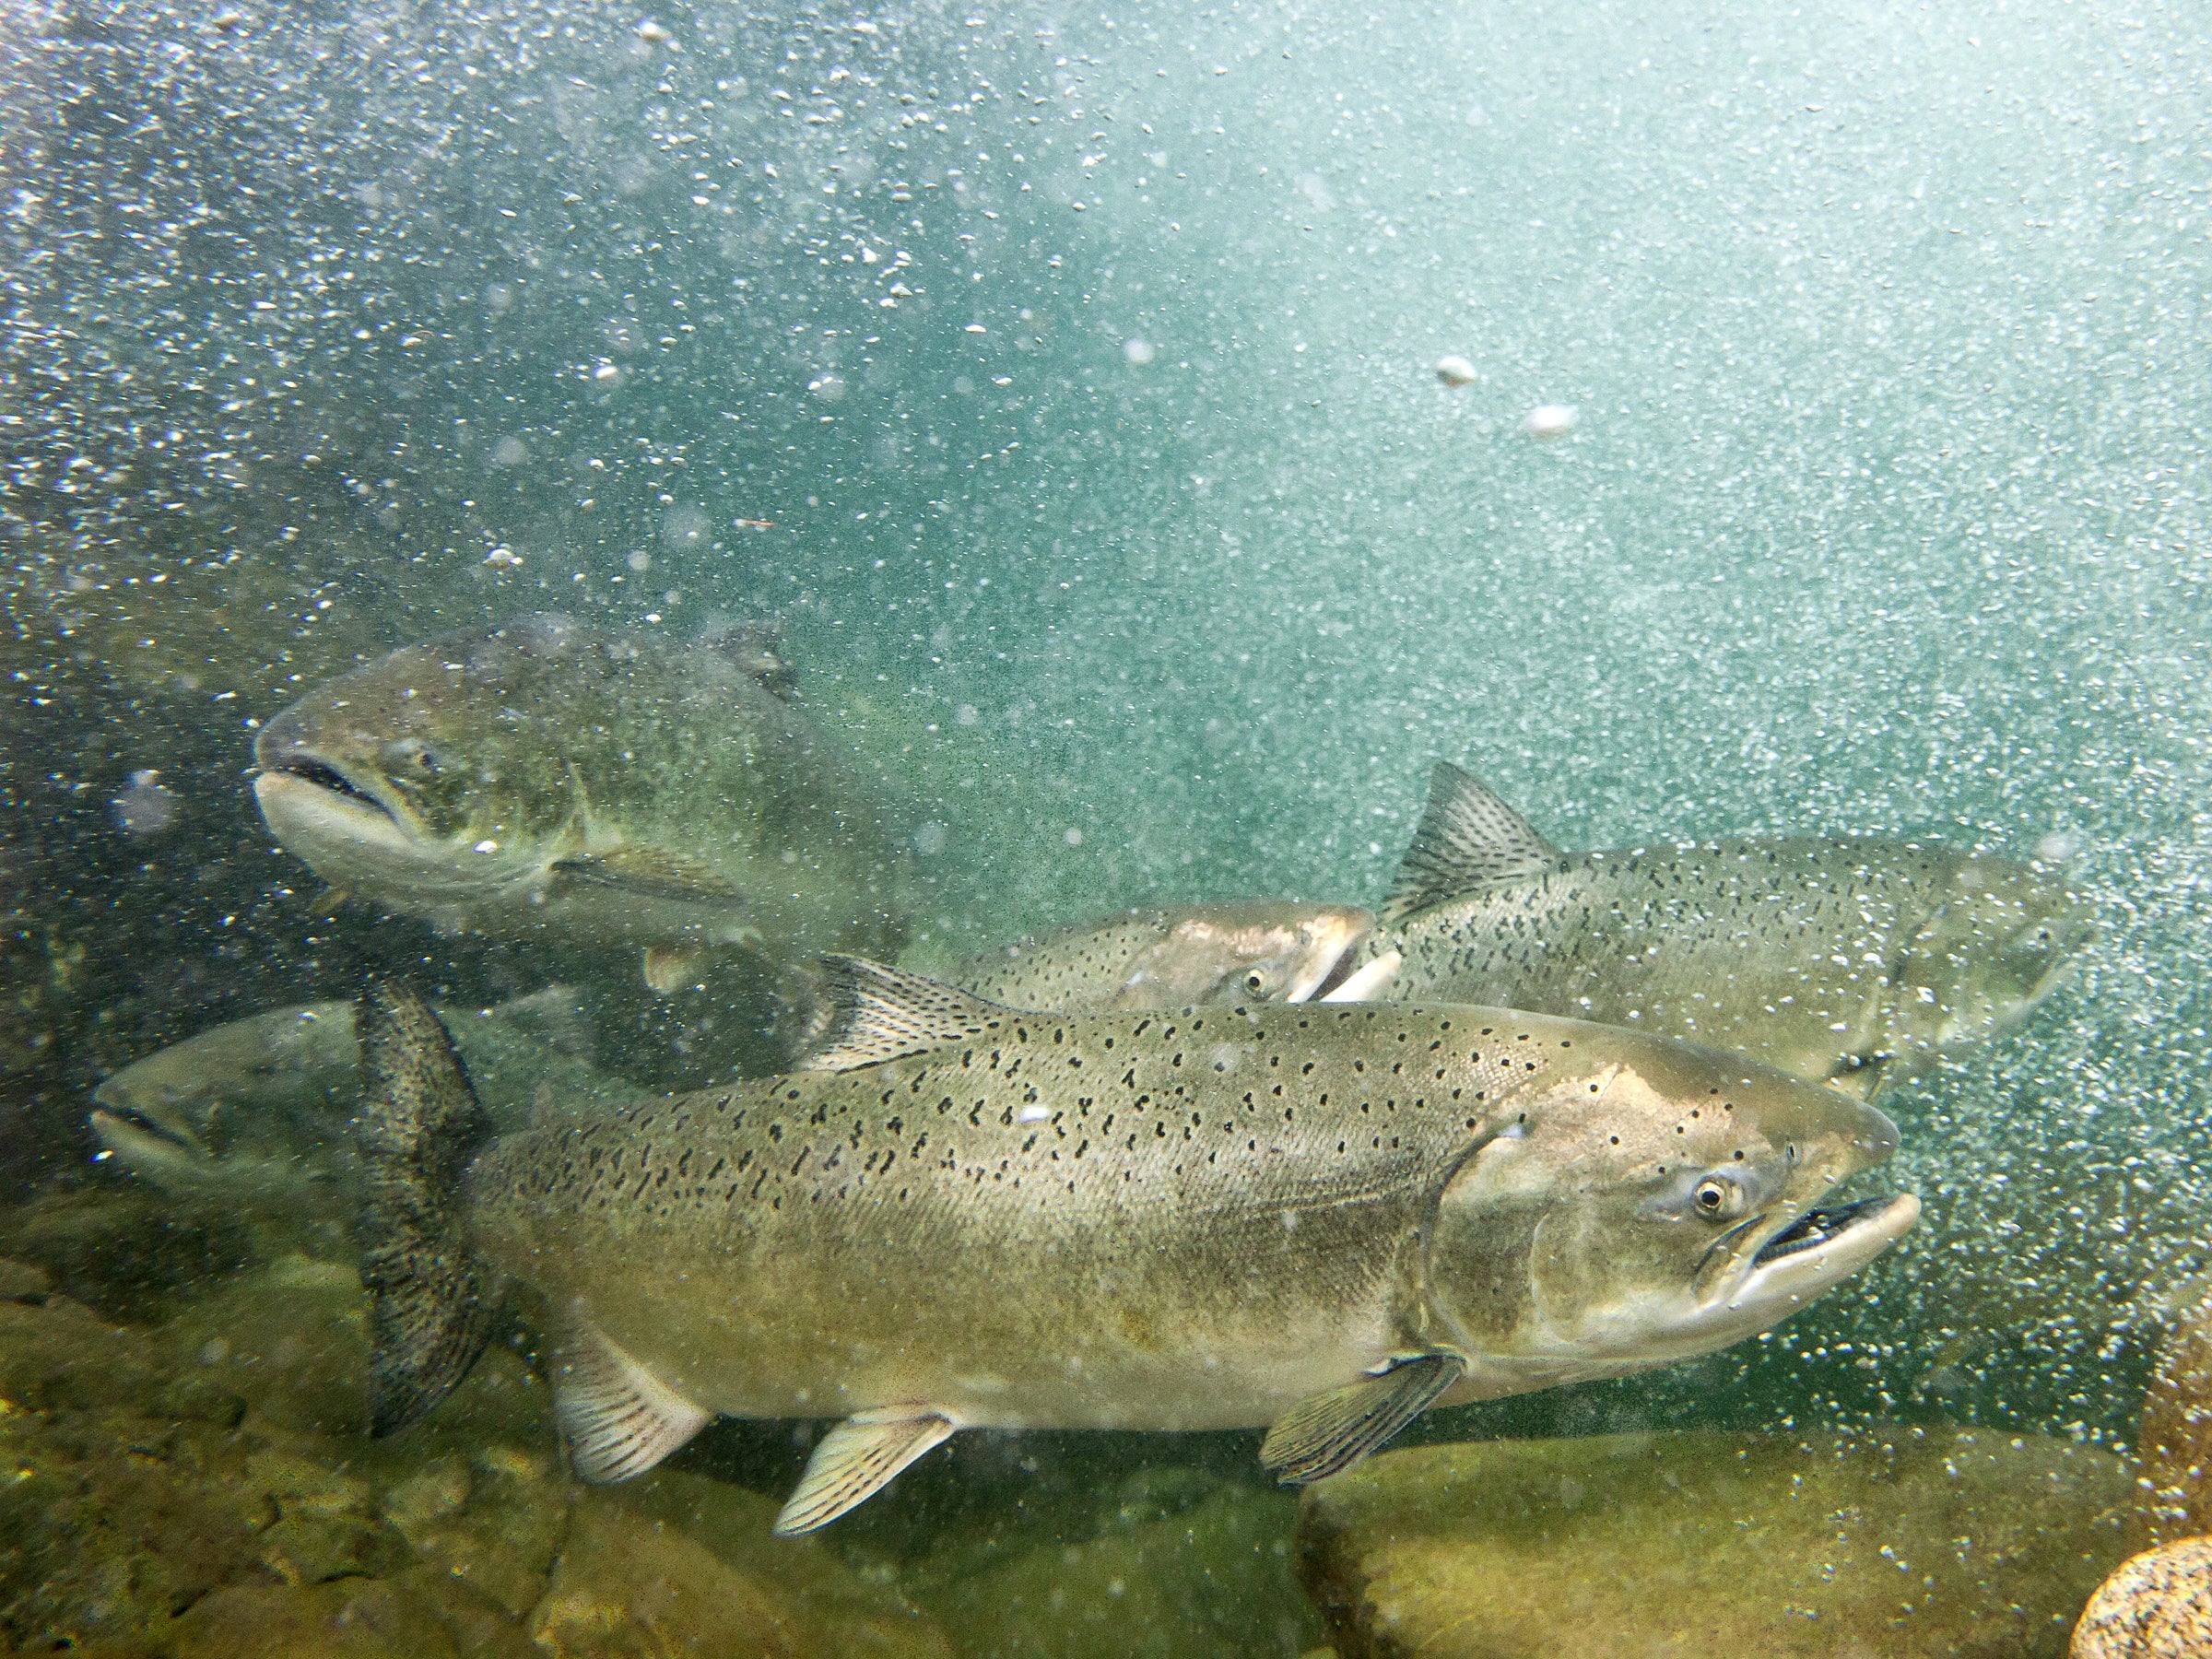 Spring-run chinook salmon